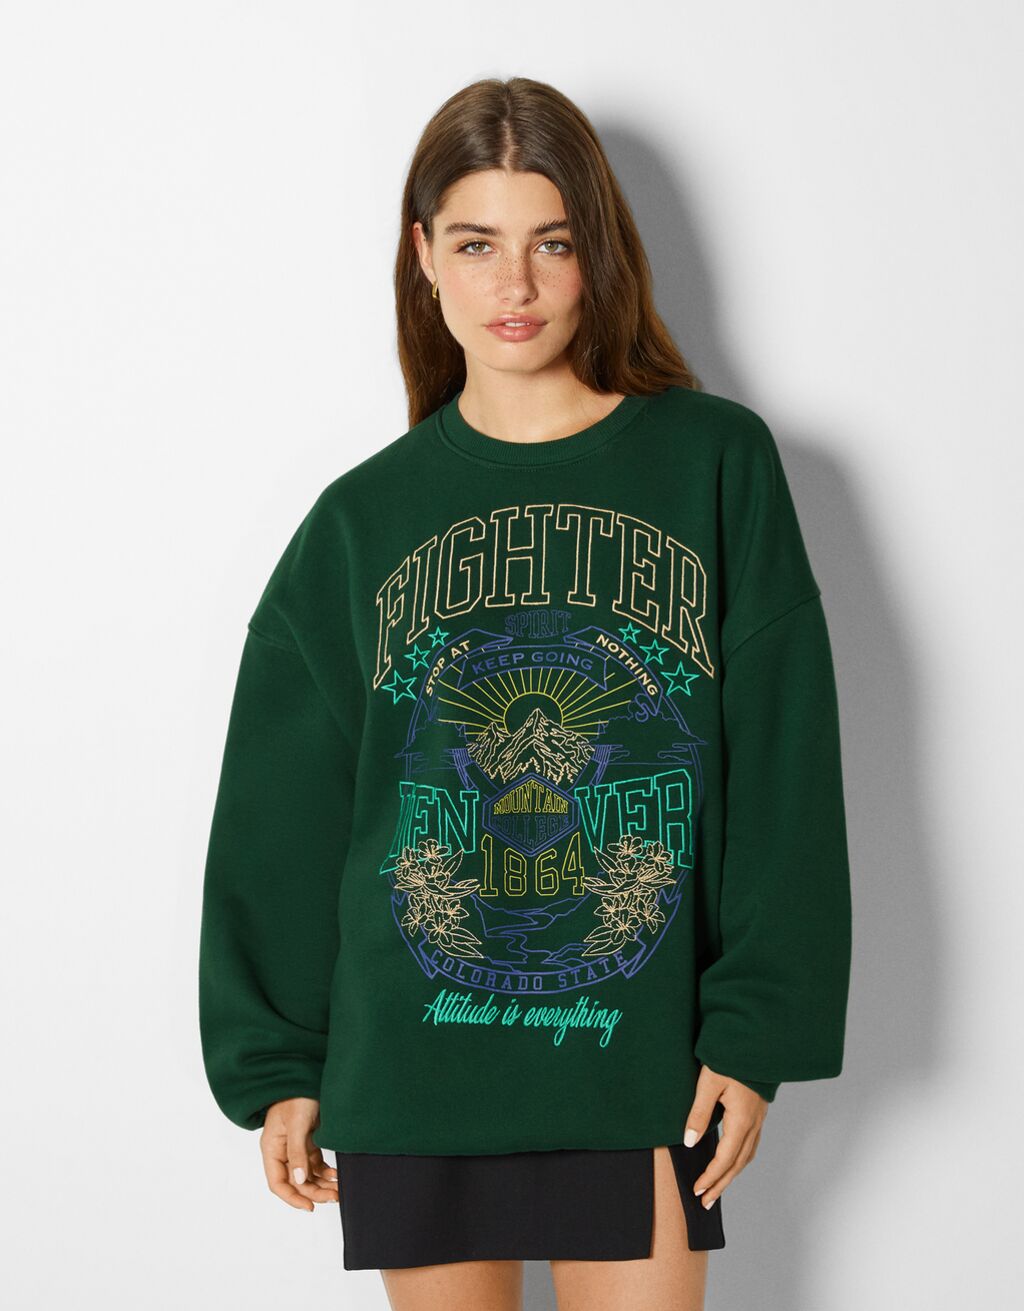 Embroidered sweatshirt